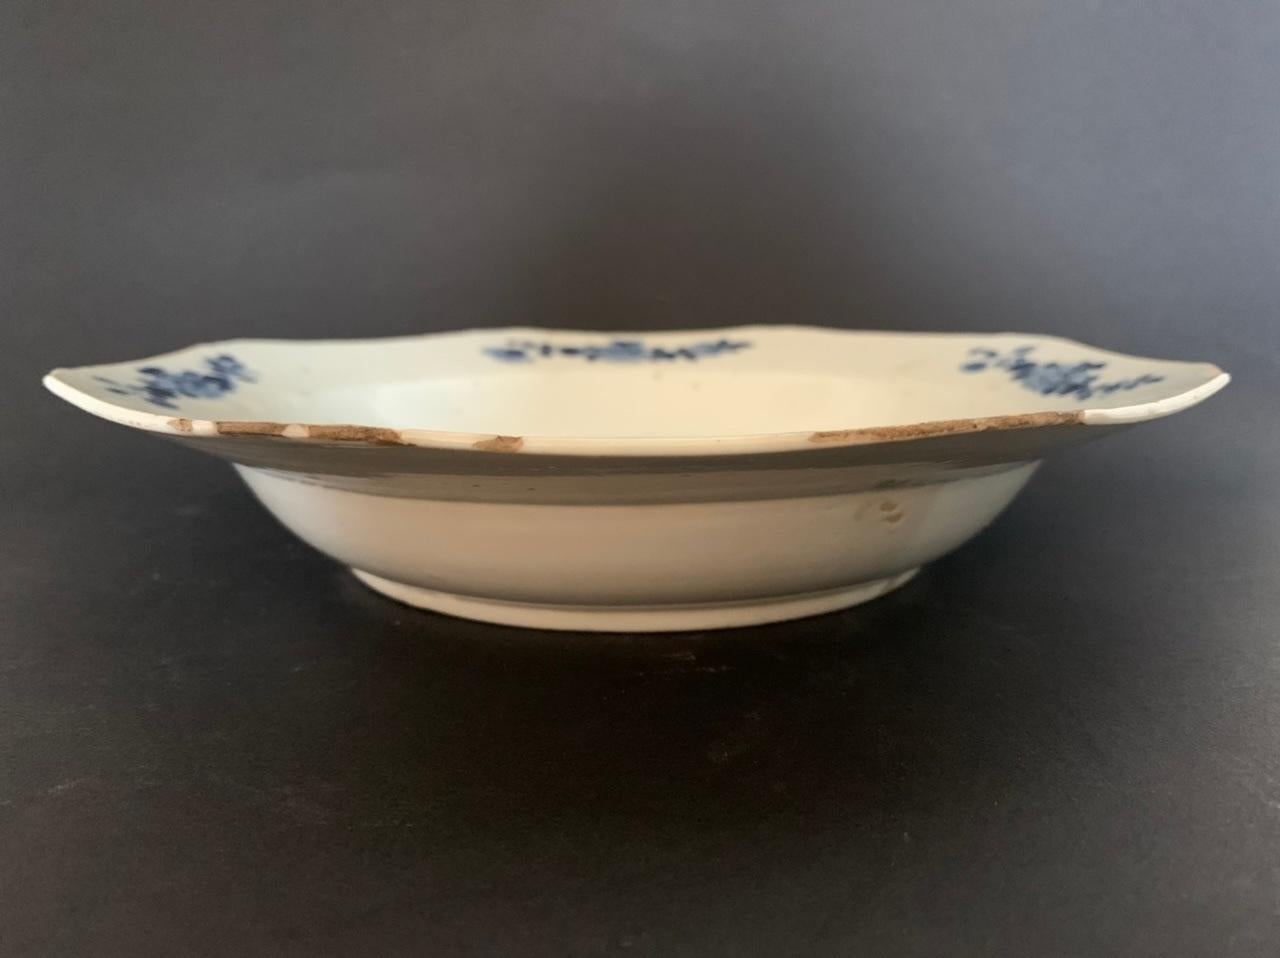 Belle assiette de la Compagnie des Indes datant de la période Qianlong, XVIIIe siècle. Assiette à soupe en porcelaine bleue et blanche. Sur cette plaque sont dessinés à l'encre bleue un ensemble de plantes ou l'on peut voir des magnolias ou des